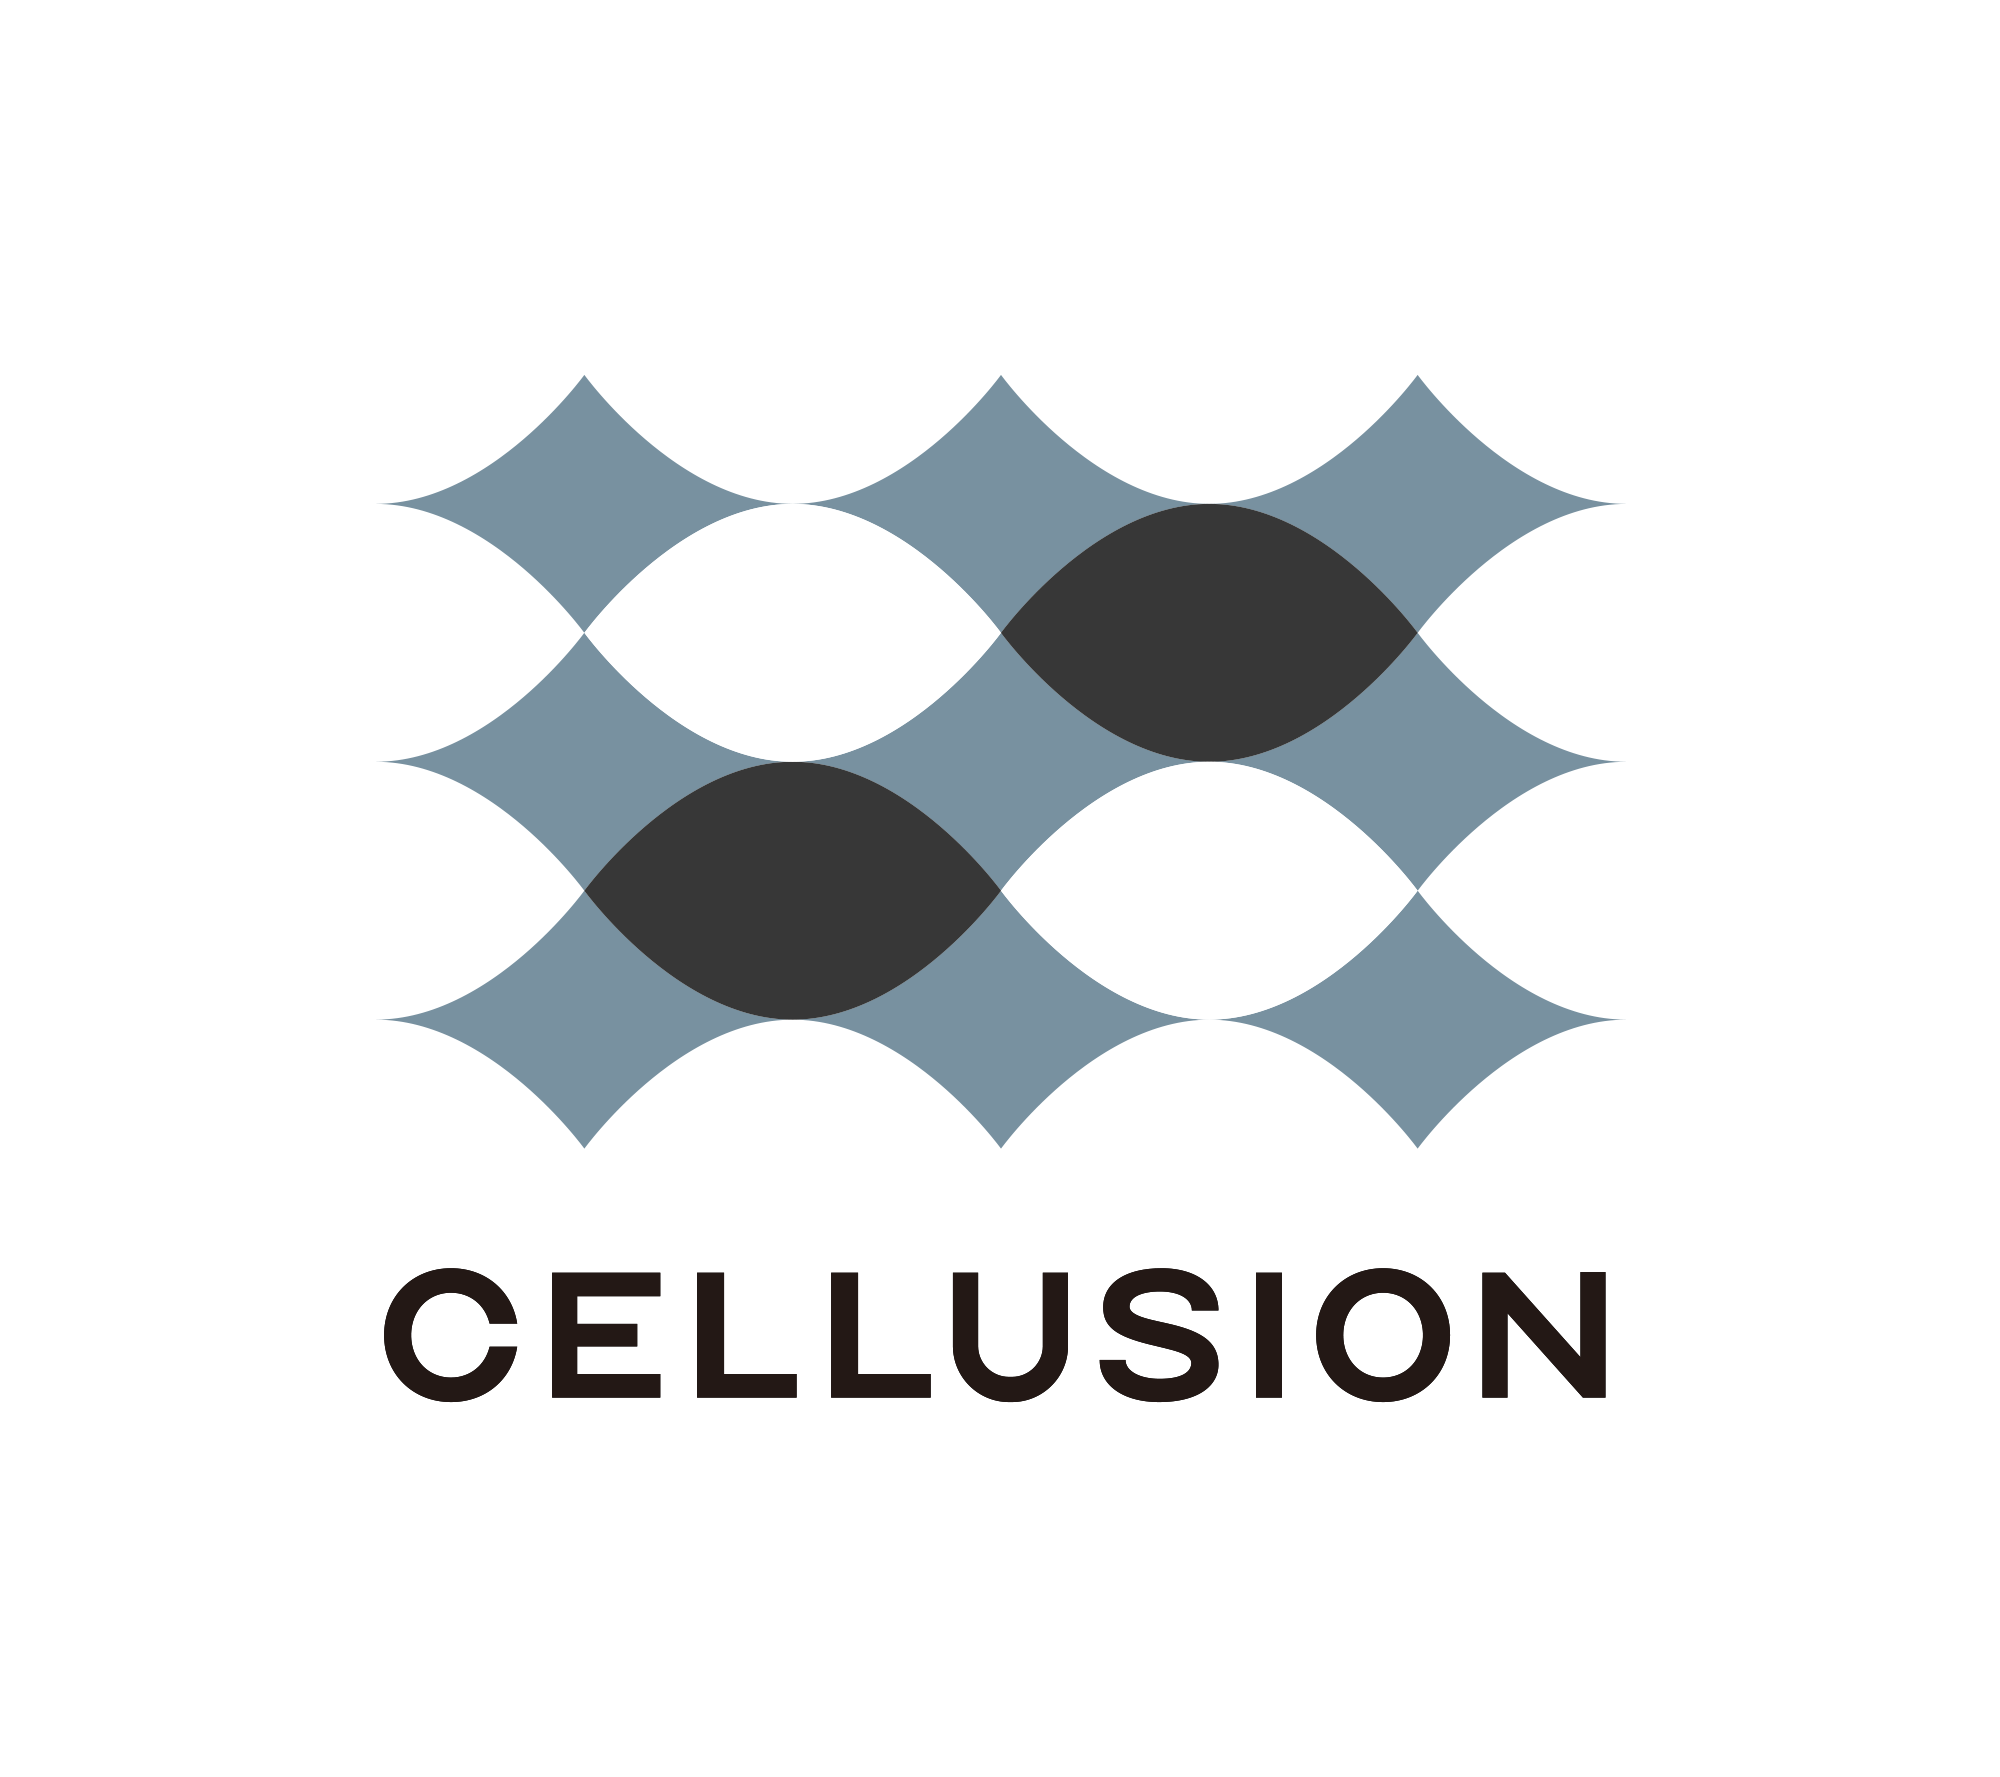 Cellusion Inc.